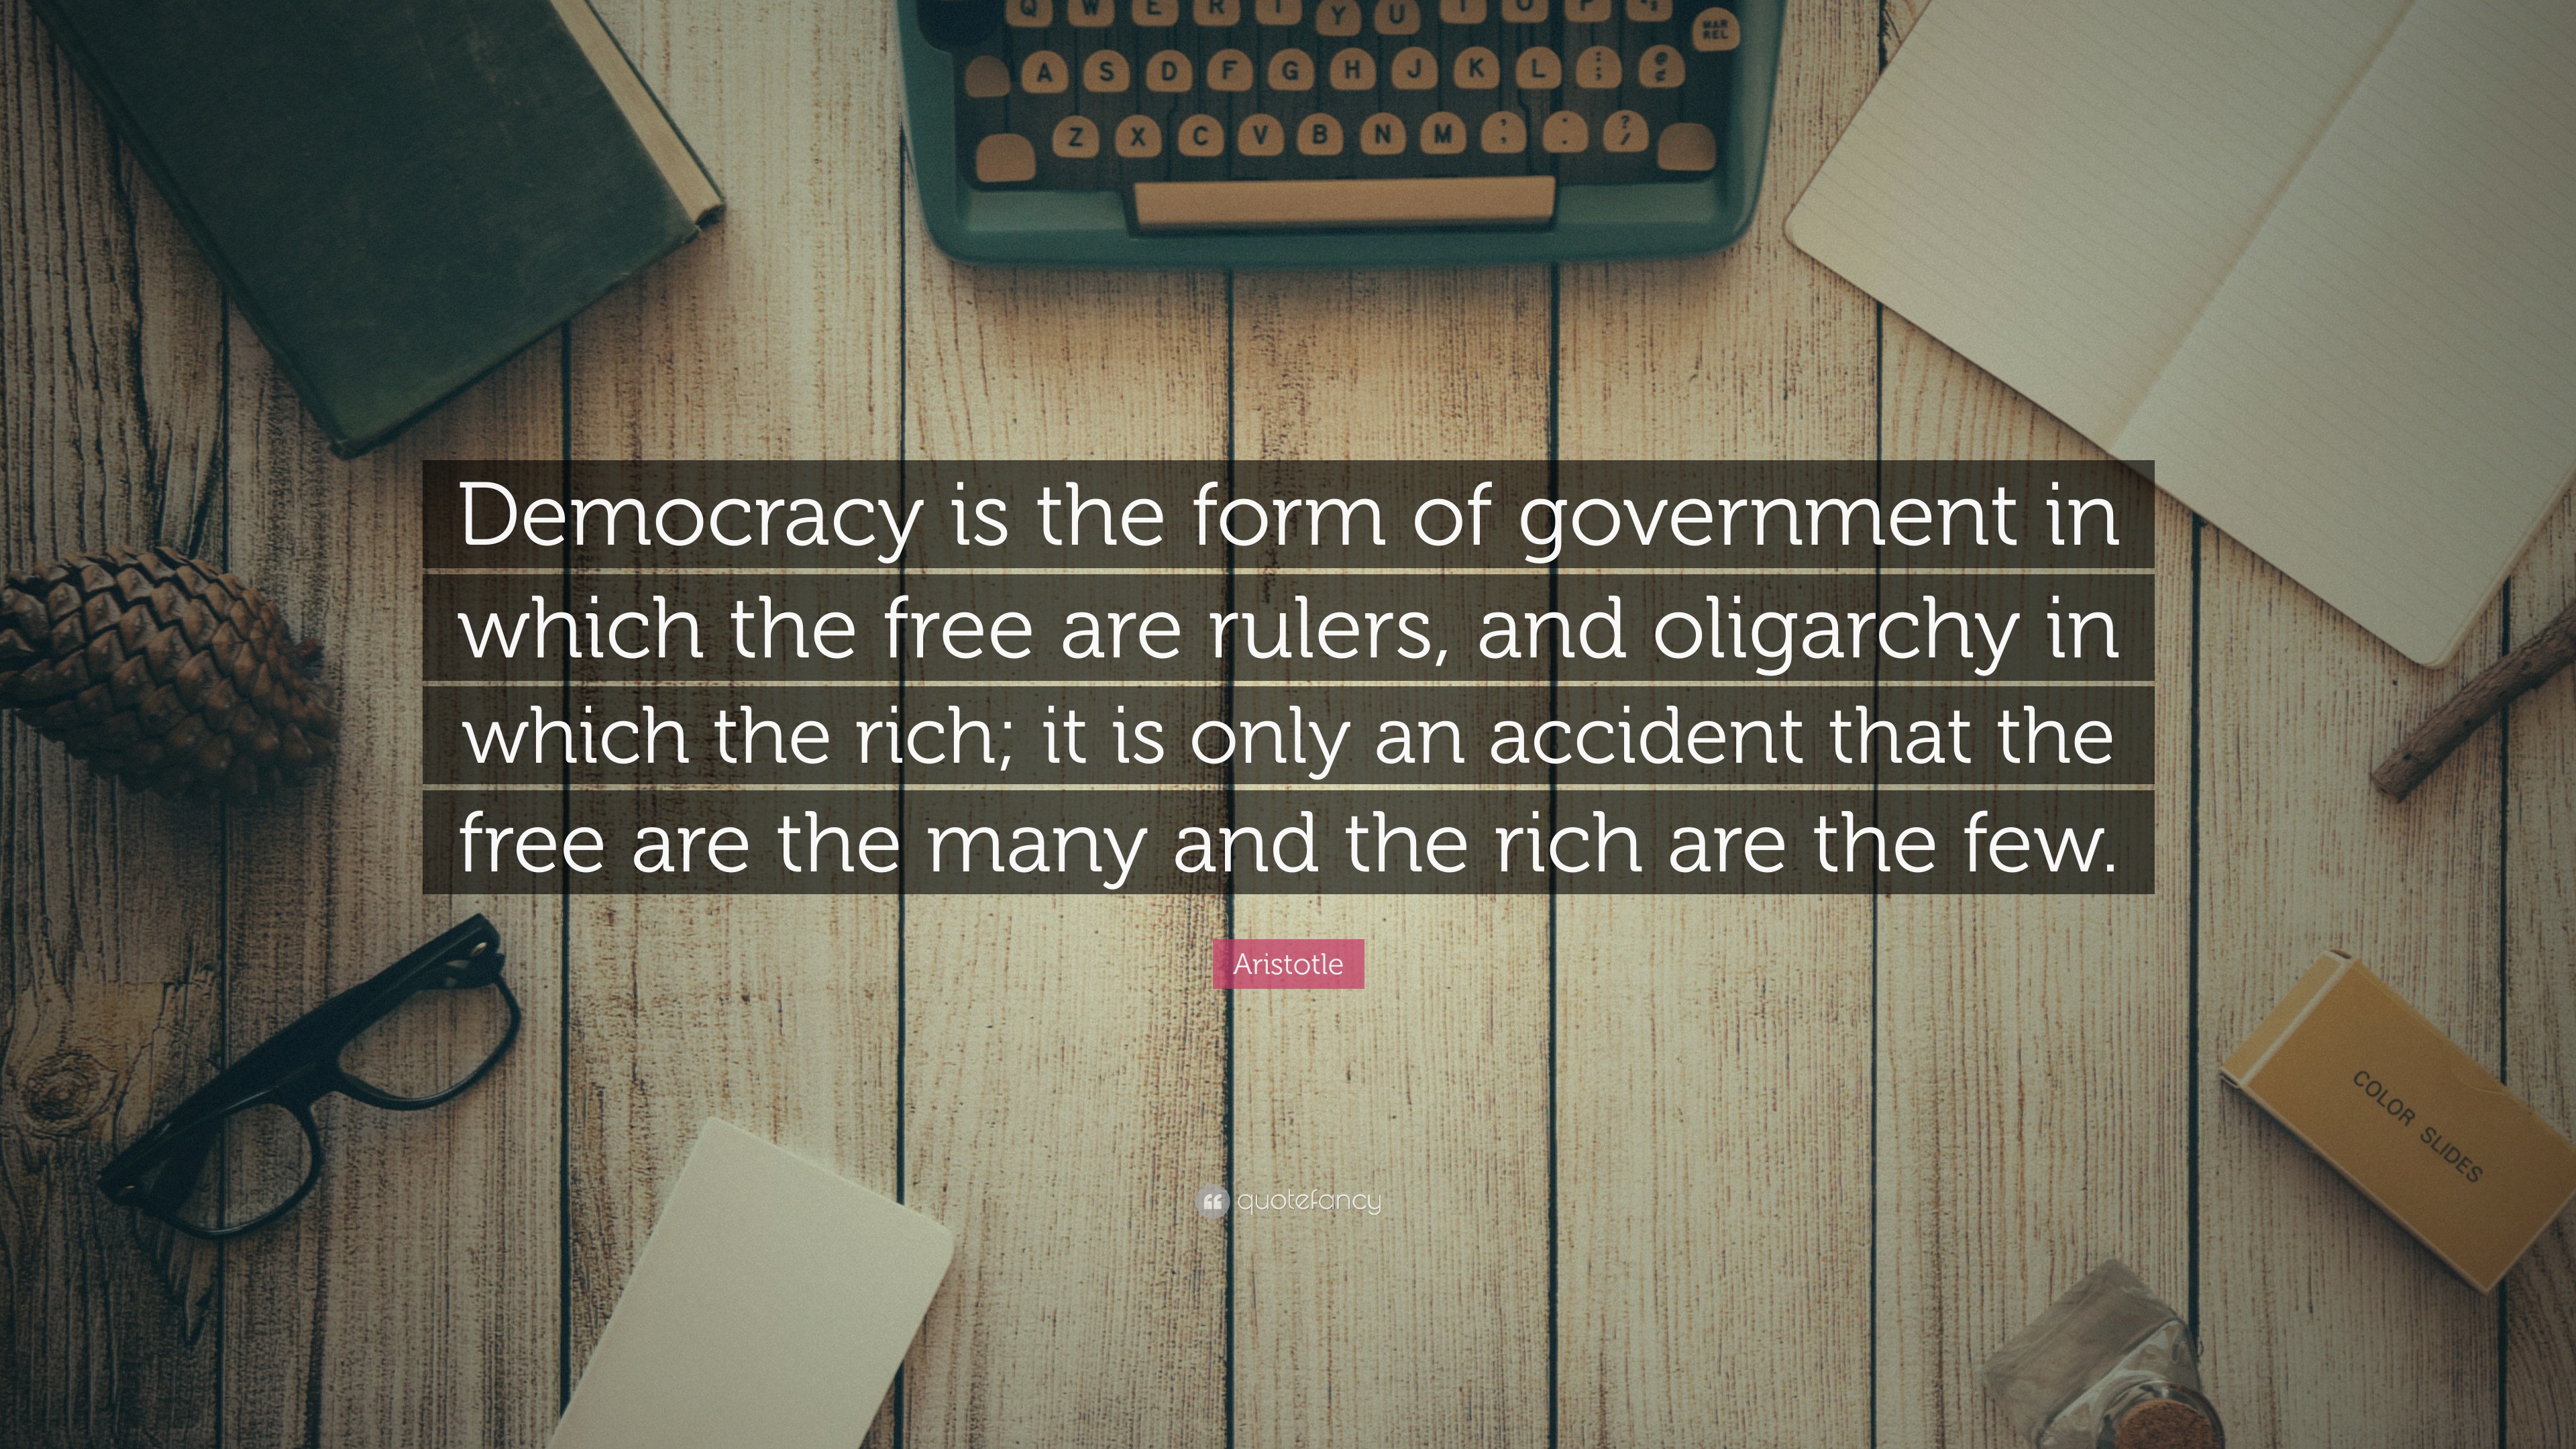 aristotle view on democracy